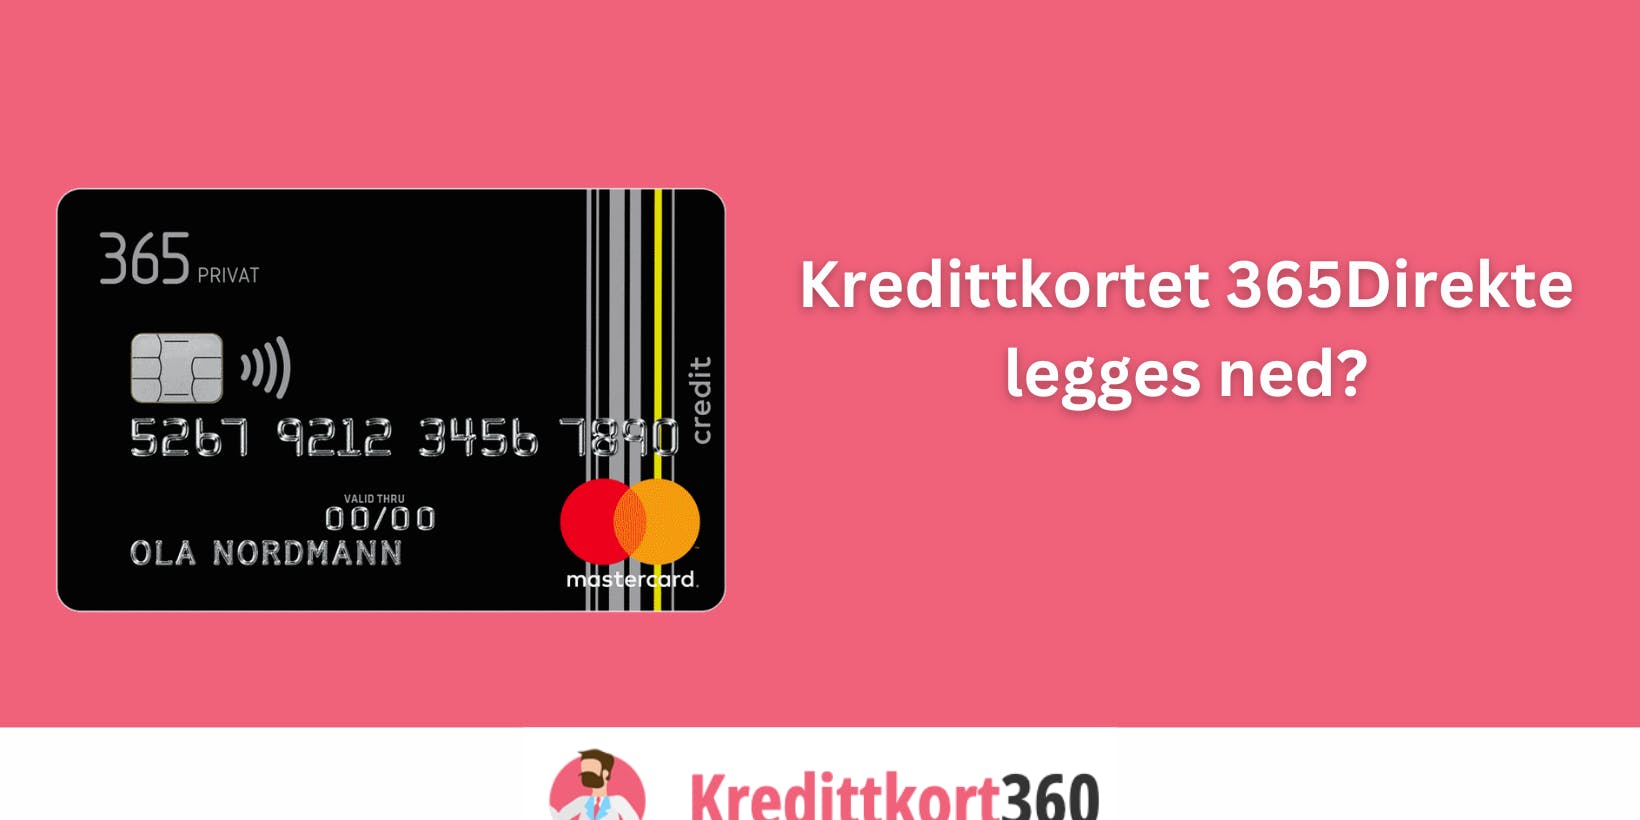 Kredittkortet 365Direkte legges ned?